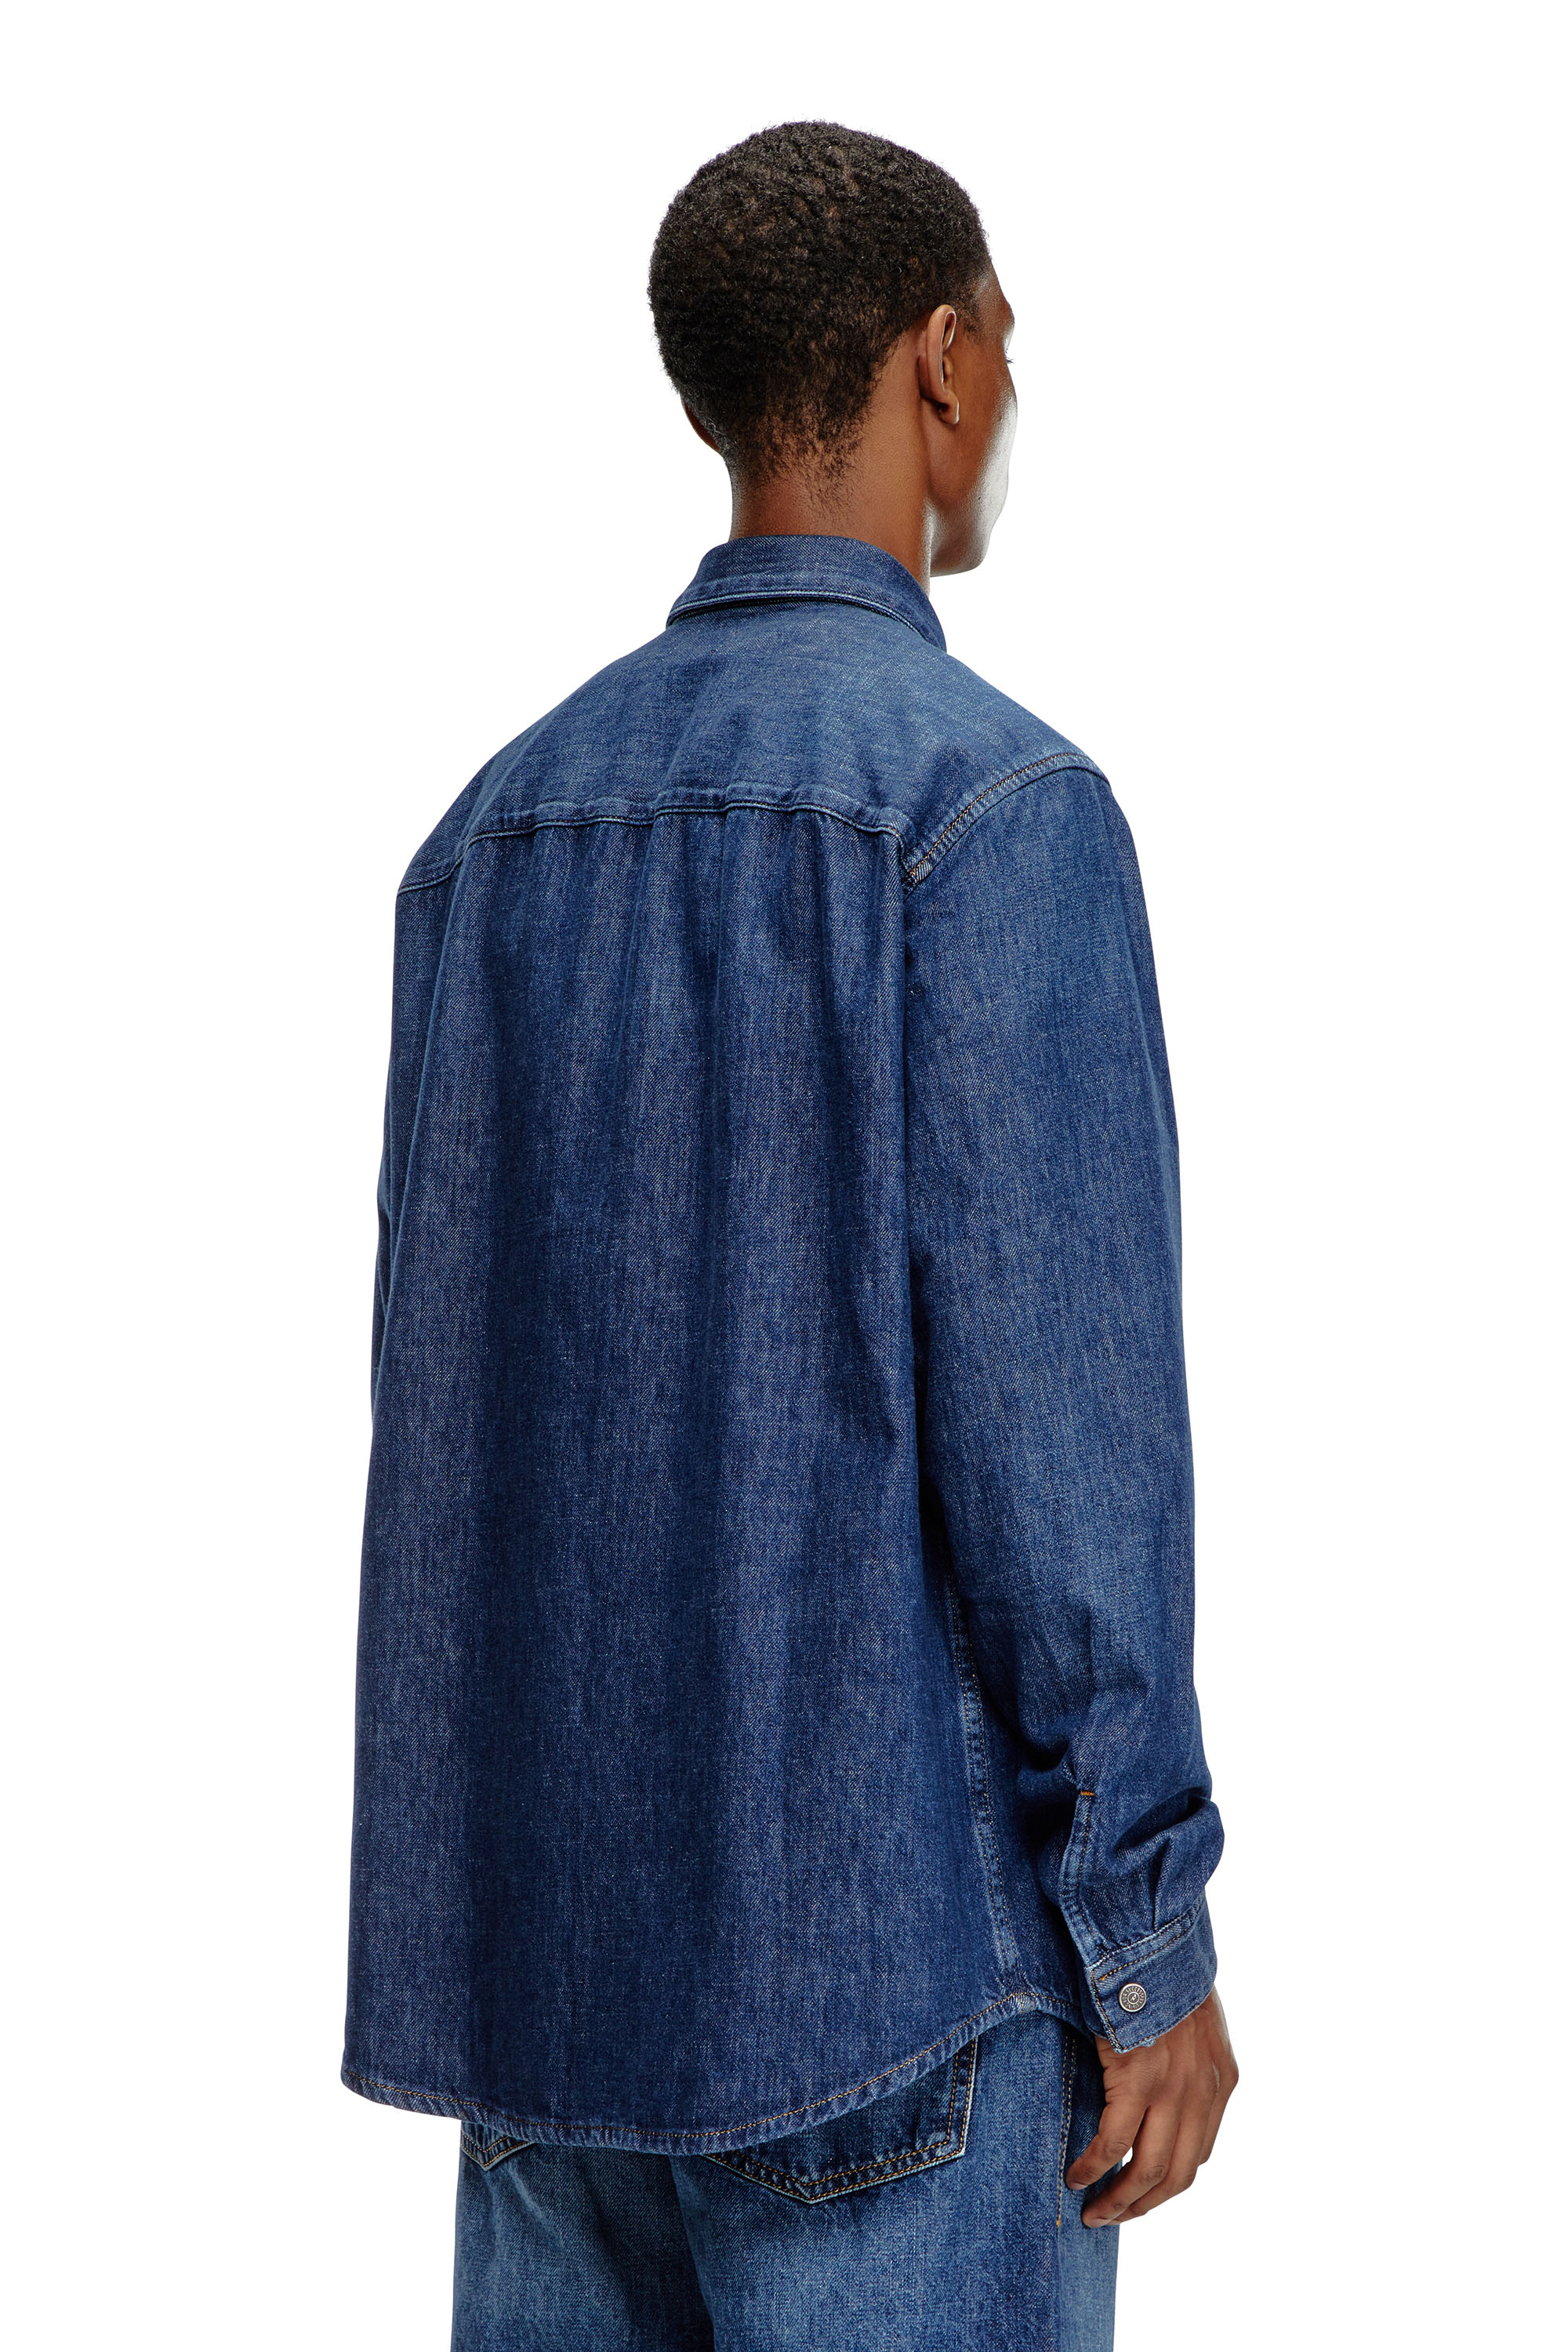 Diesel - D-SIMPLY, Man Shirt in denim in Blue - Image 3